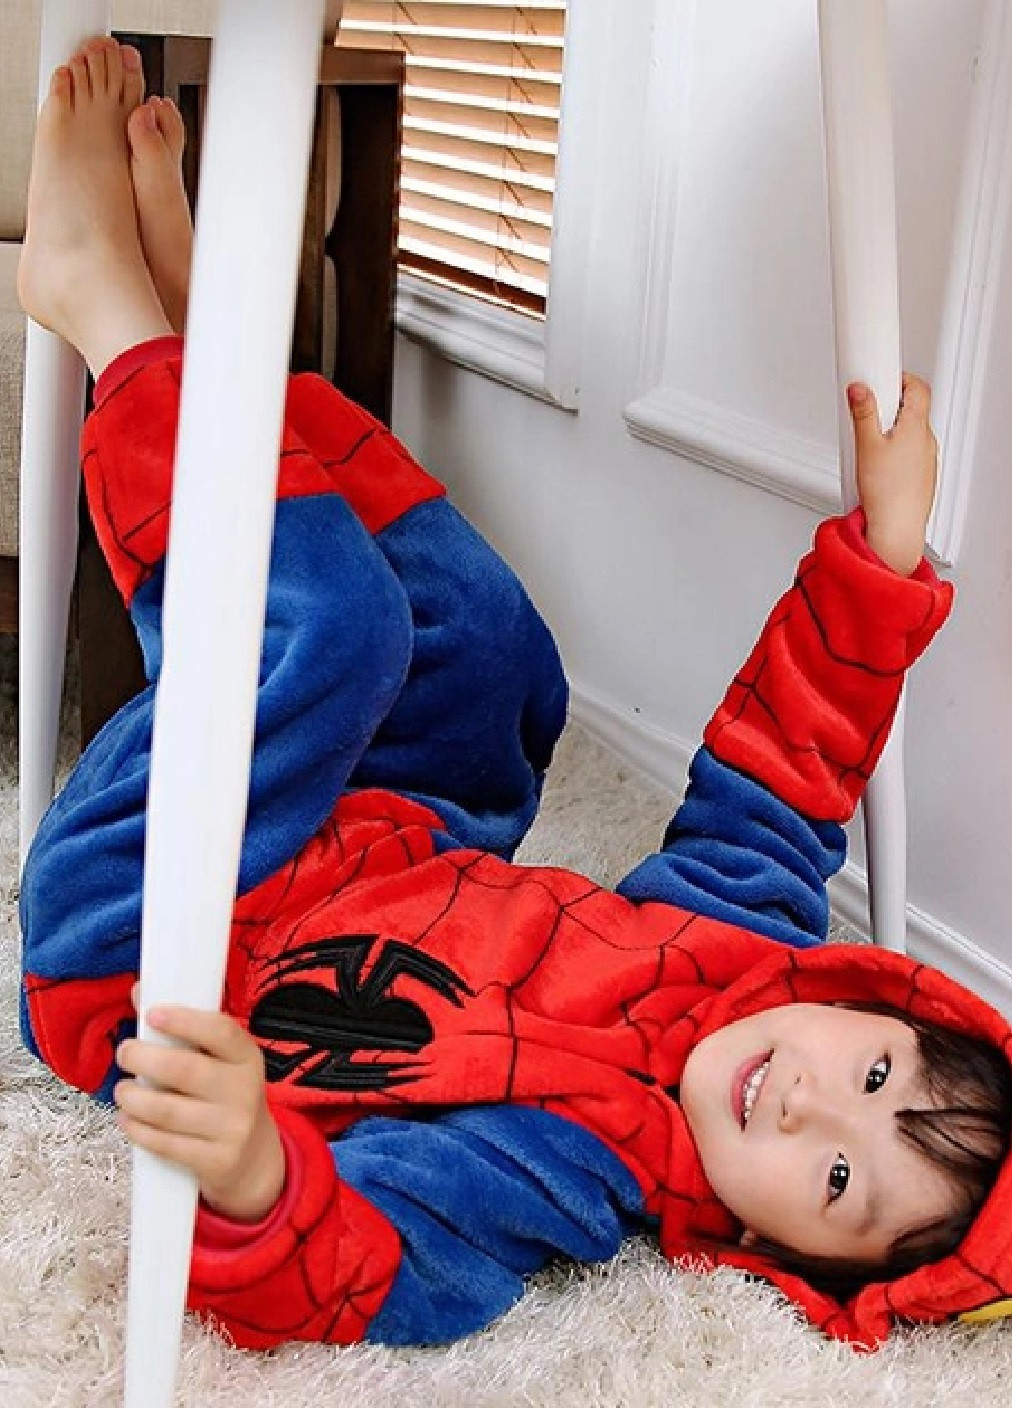 Кигуруми костюм пижама теплый махровый для детей мальчиков девочек с капюшоном карманами размер L (475408-Prob) Человек-паук Unbranded (266991081)